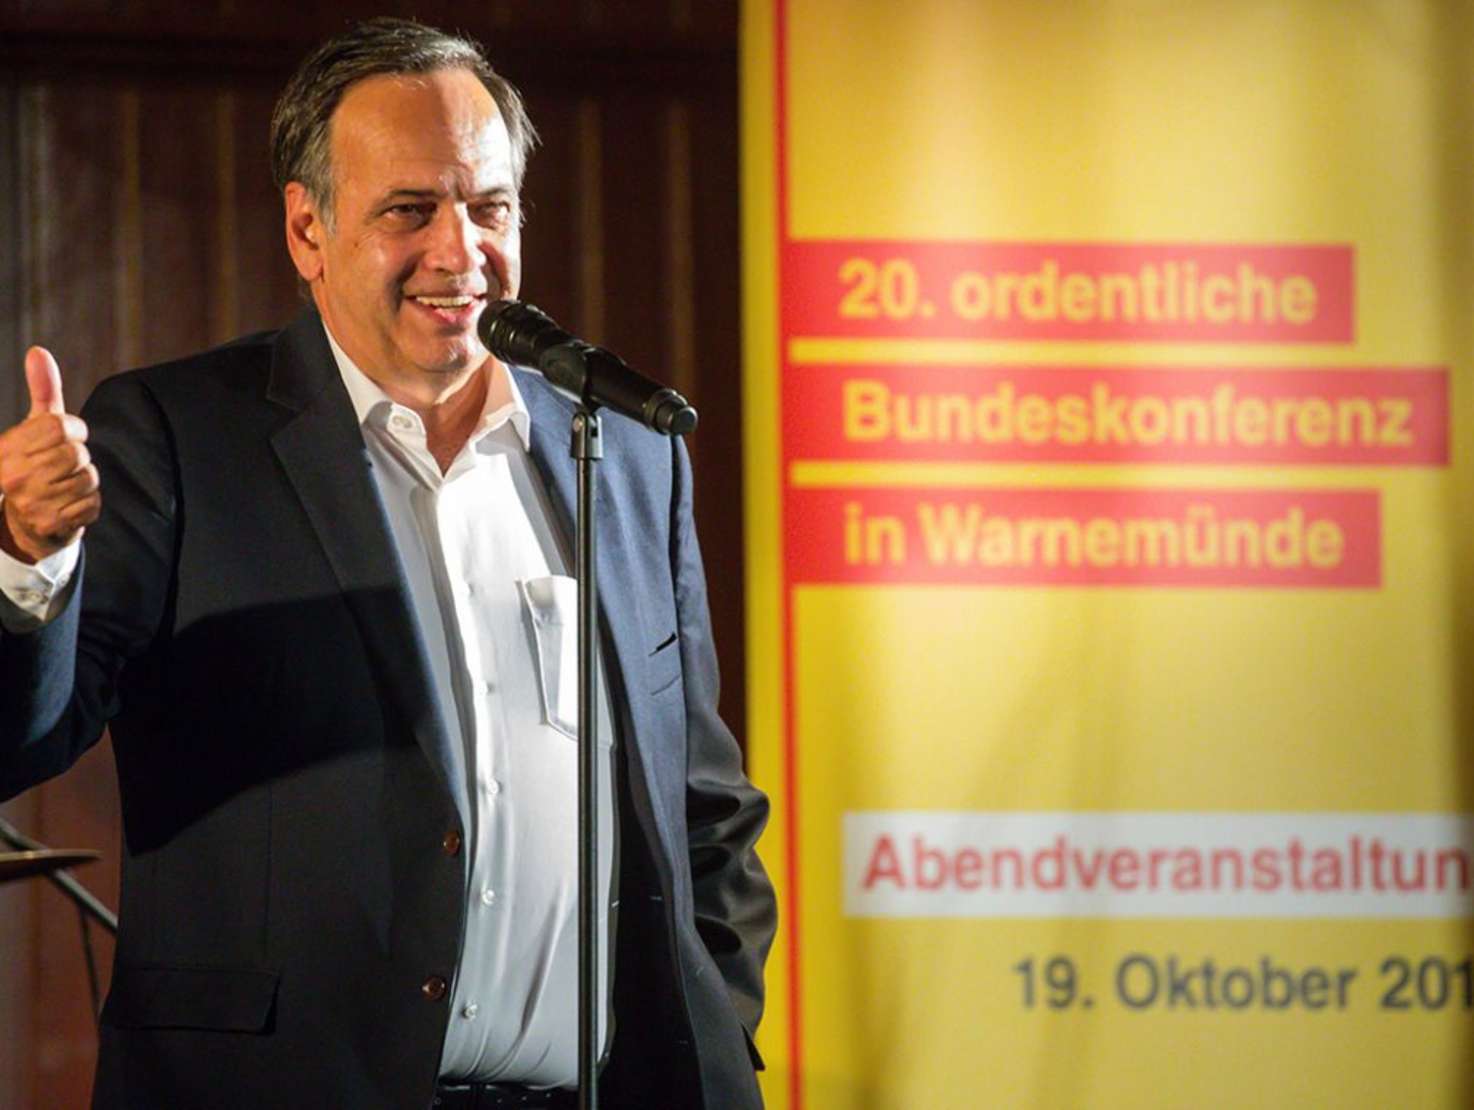 Der neue alte ASB-Bundesvorsitzende Knut Fleckenstein nach seiner Wiederwahl bei der Bundeskonferenz in Warnemünde. Foto: ASB/Hannibal